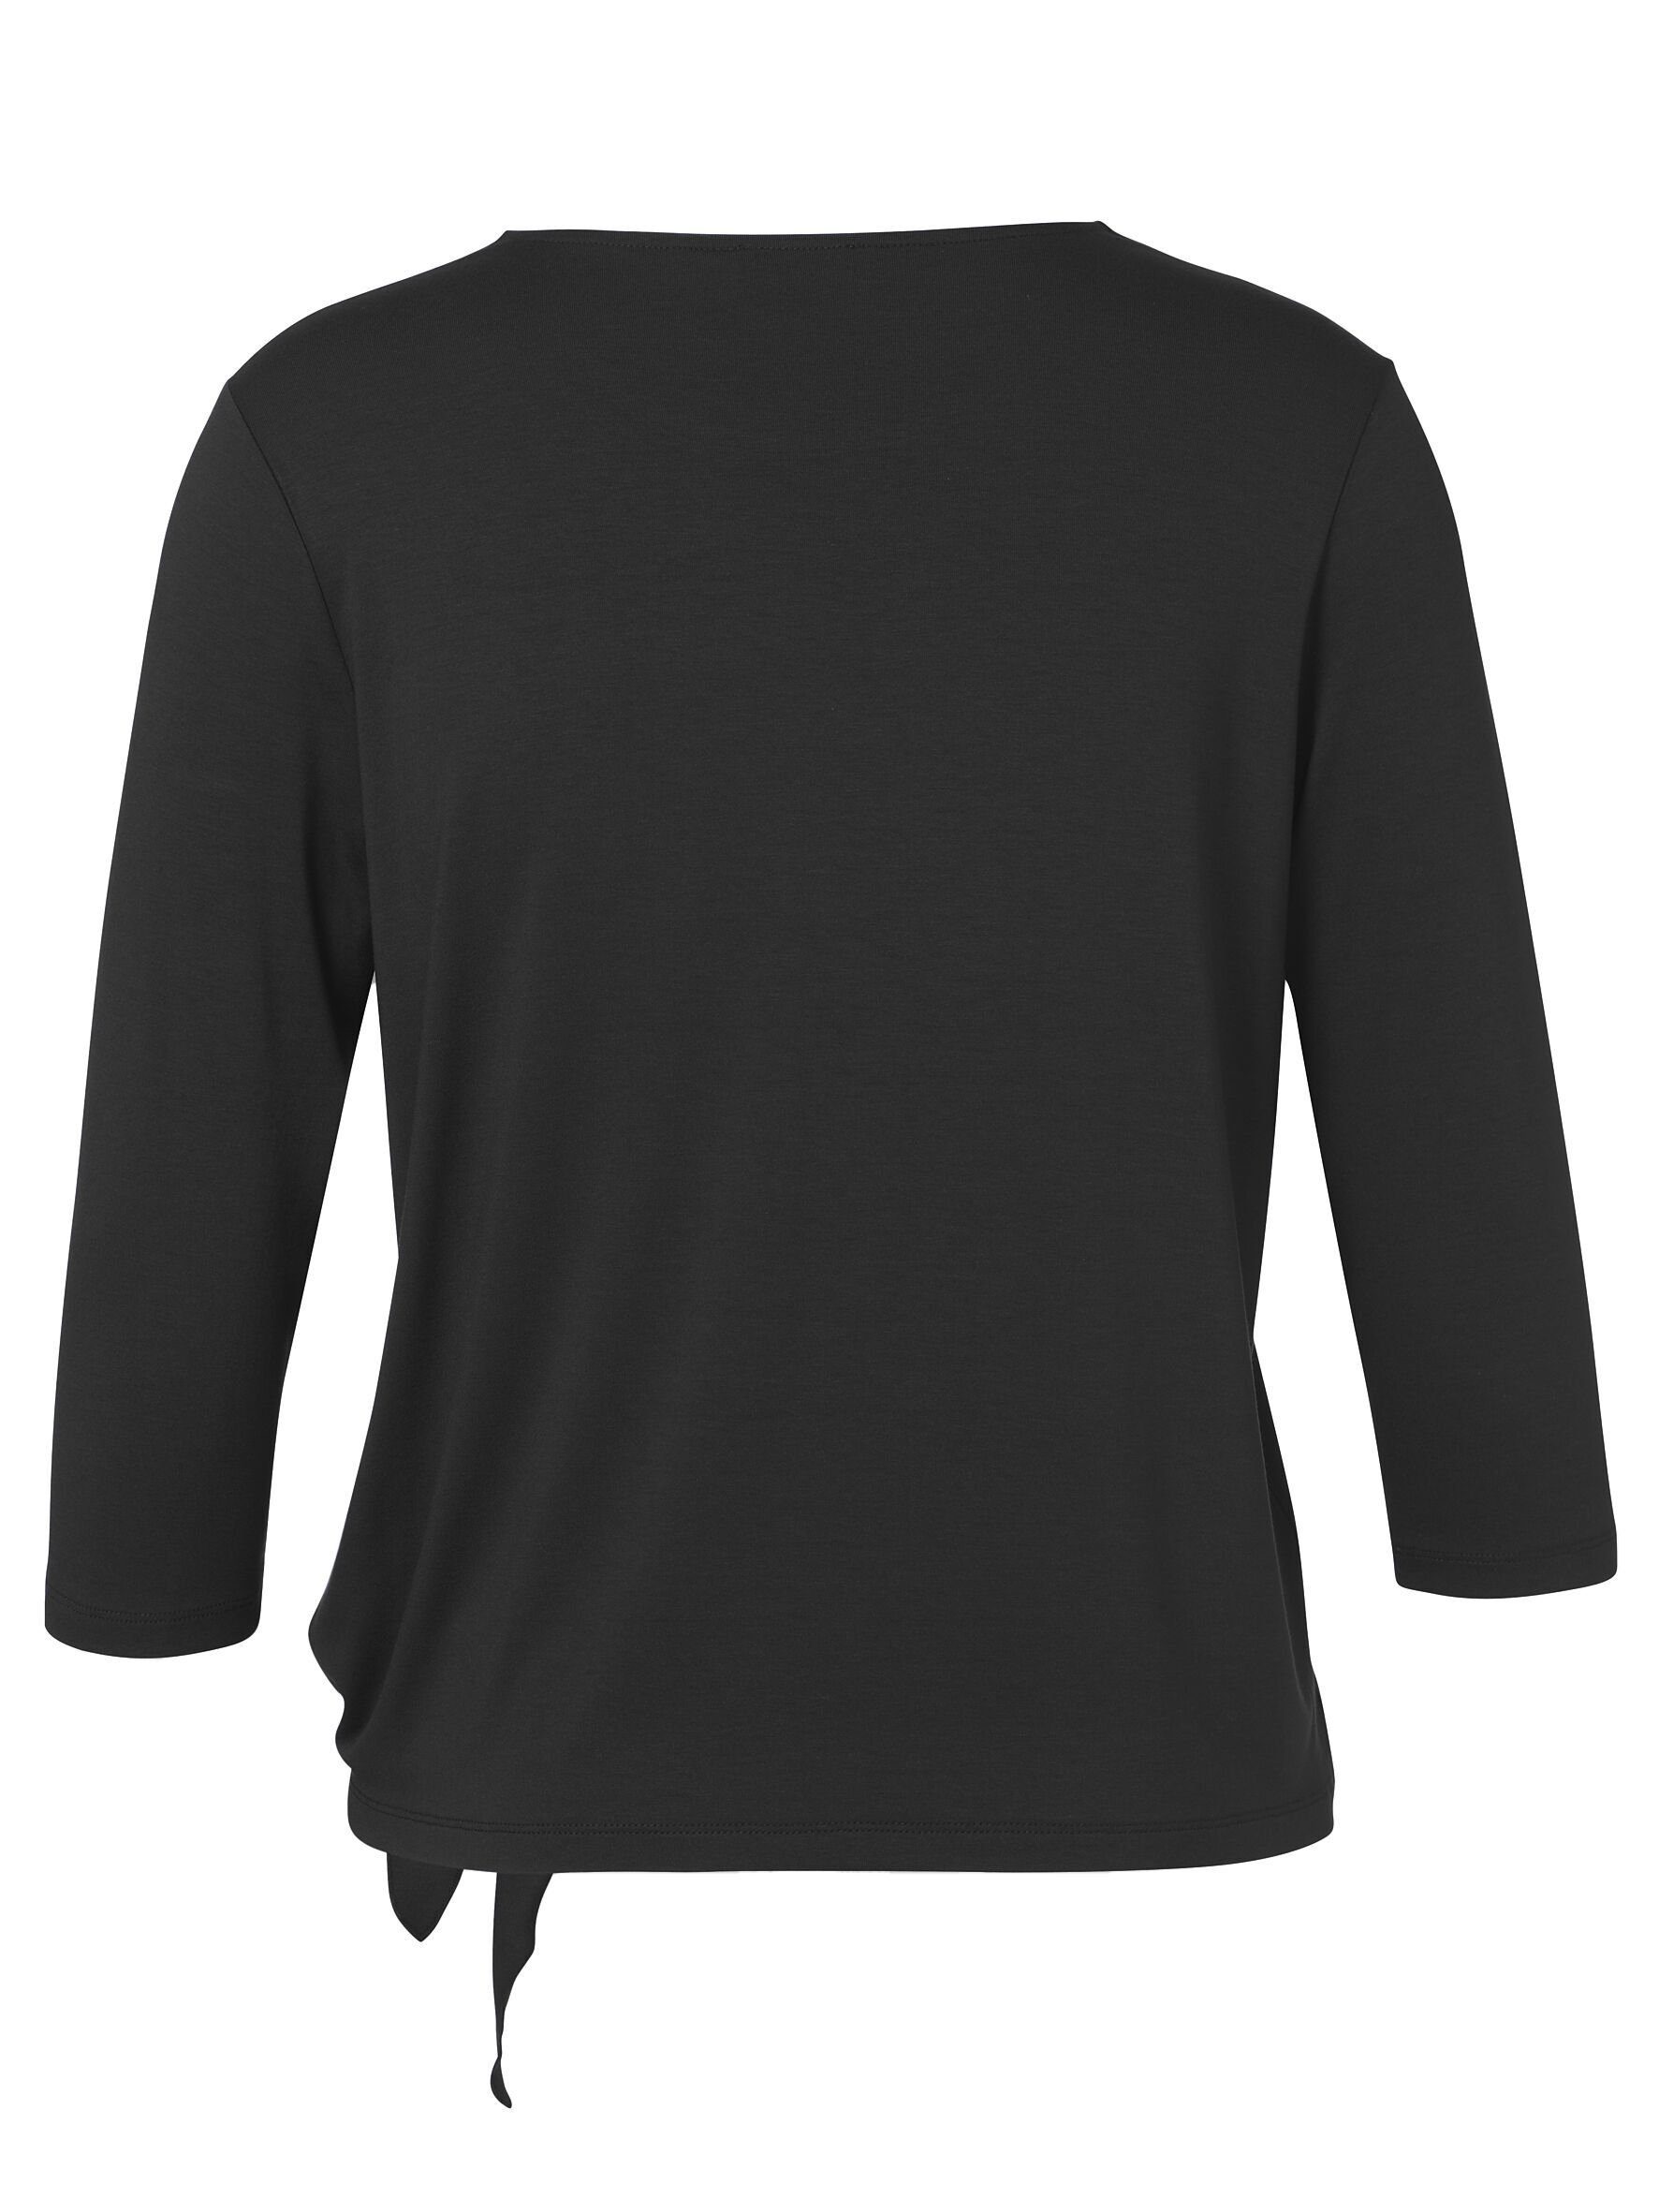 APPIA Stil schwarz unifarbenem Rundhalsshirt in VIA DUE